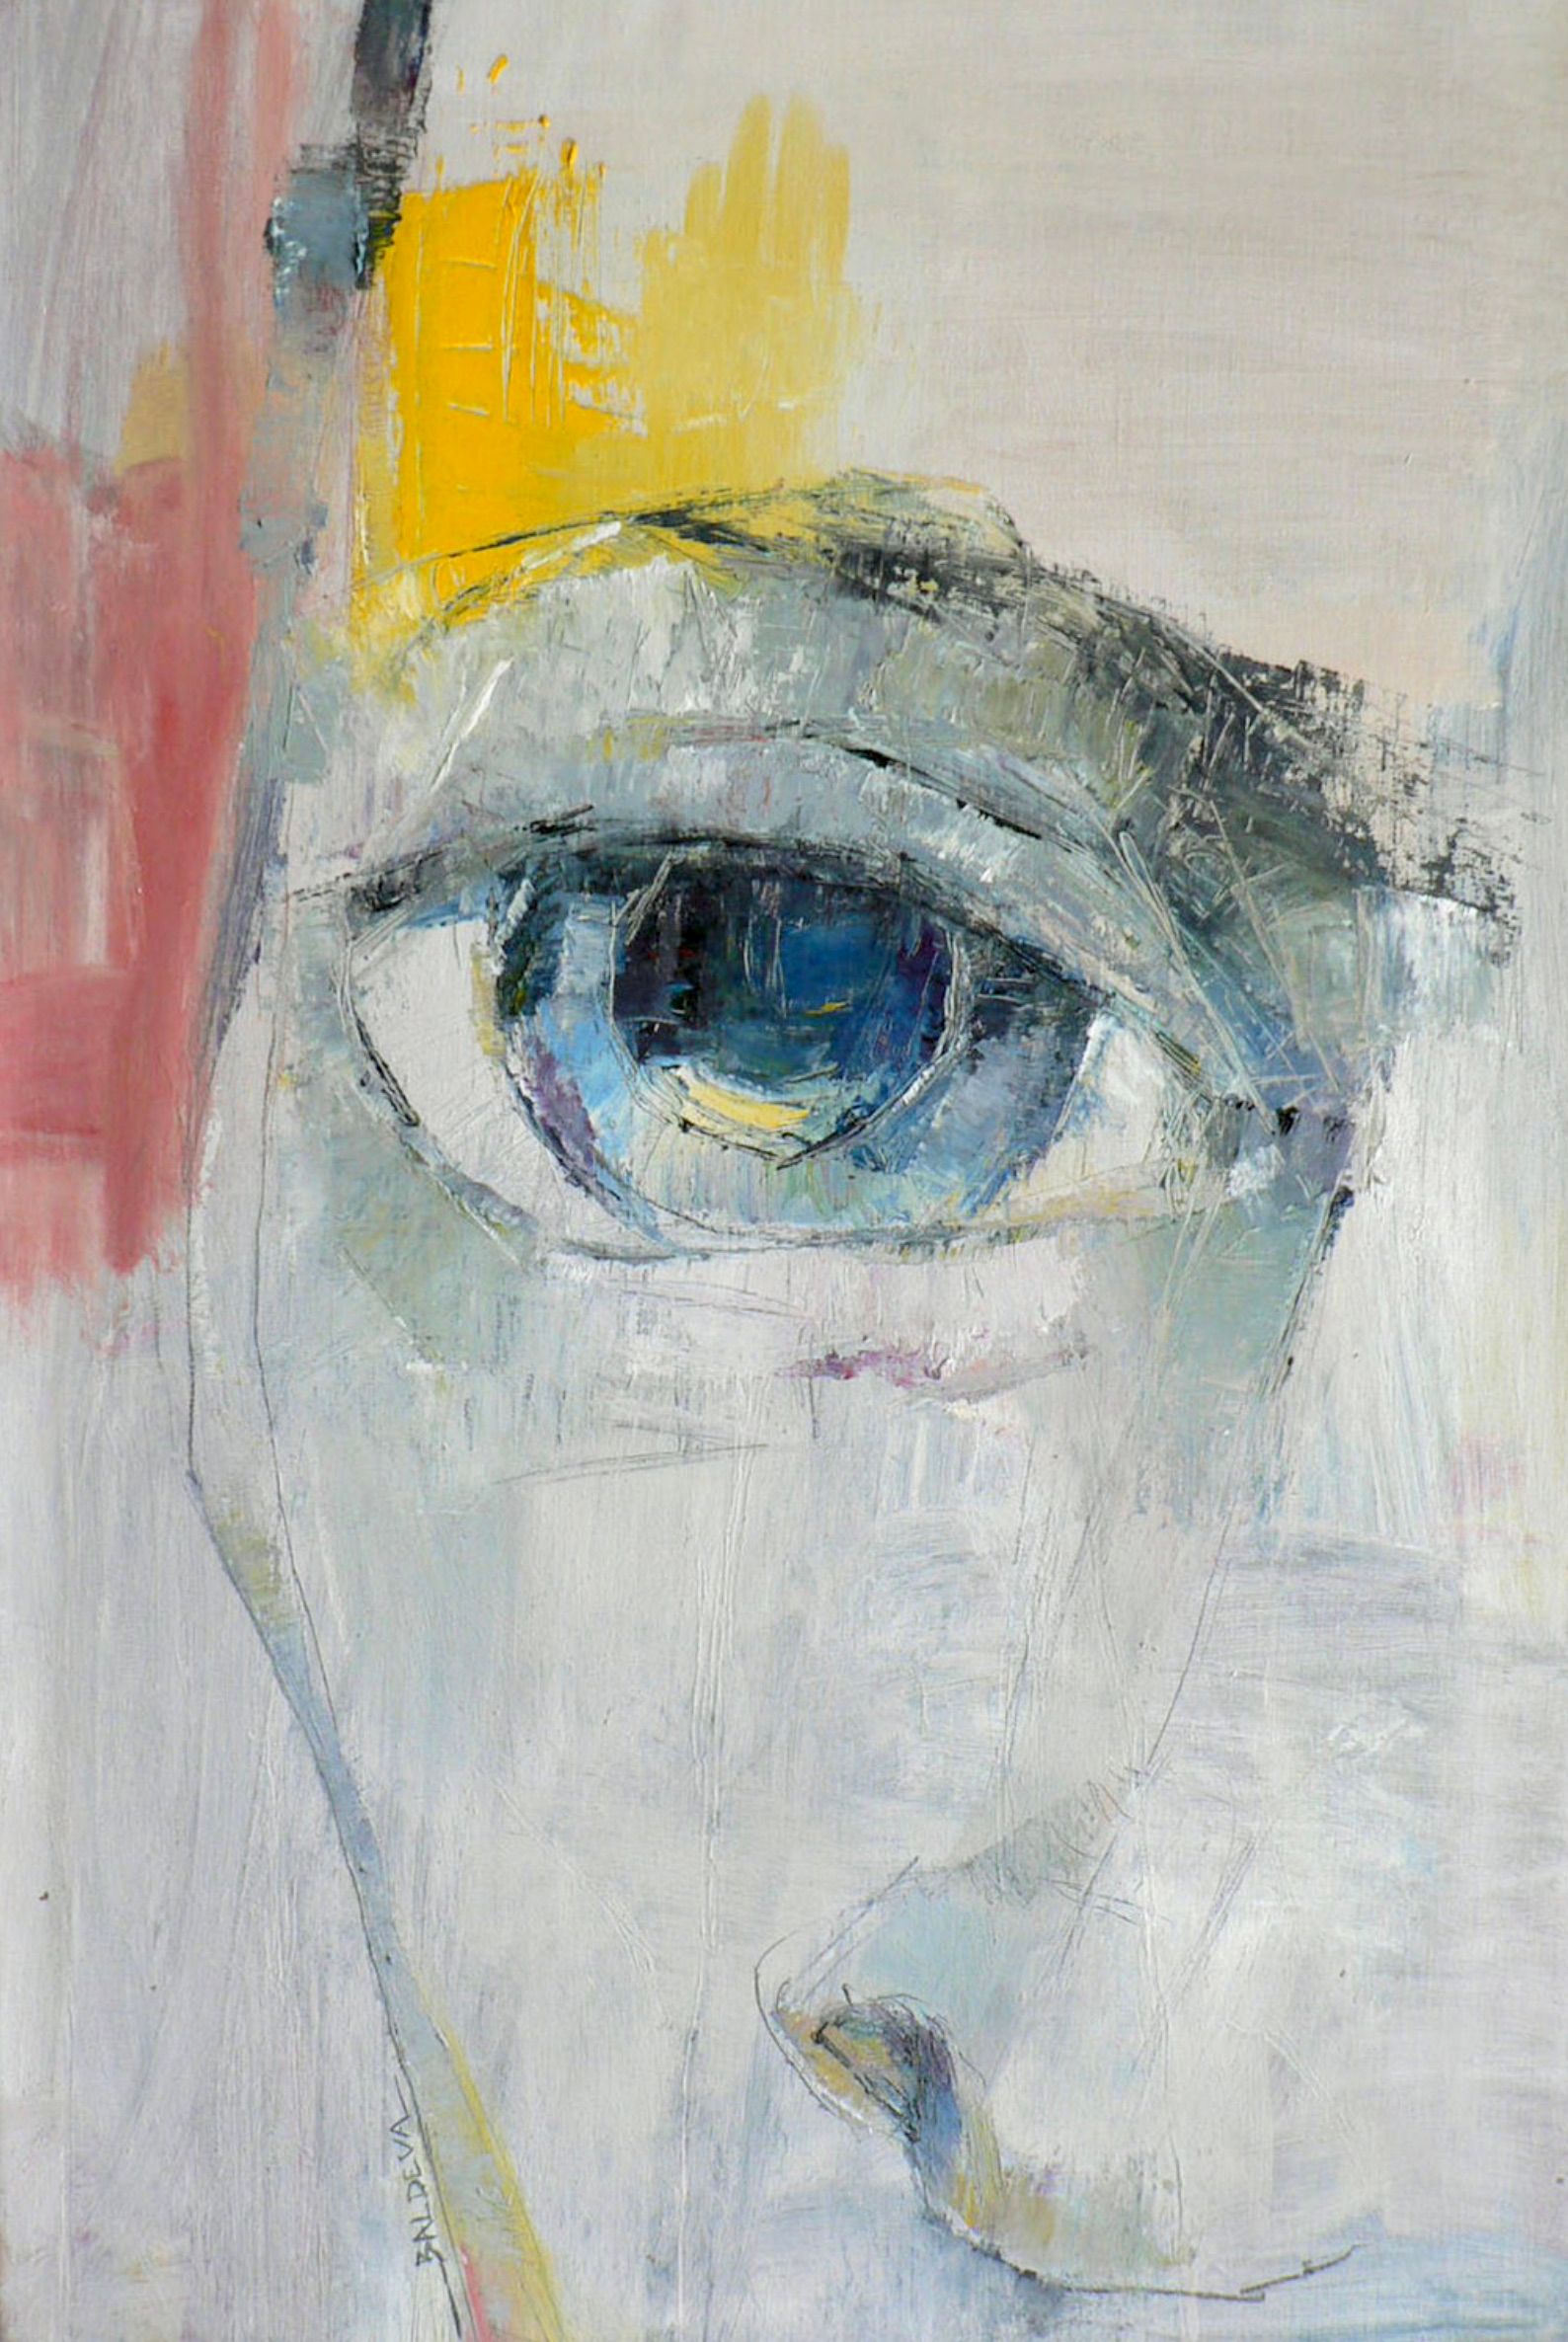 L'opera "Gros plan" di Sylvia Baldeva mostra un dipinto a olio. Volto, sguardo, espressione, primo piano, ritratto